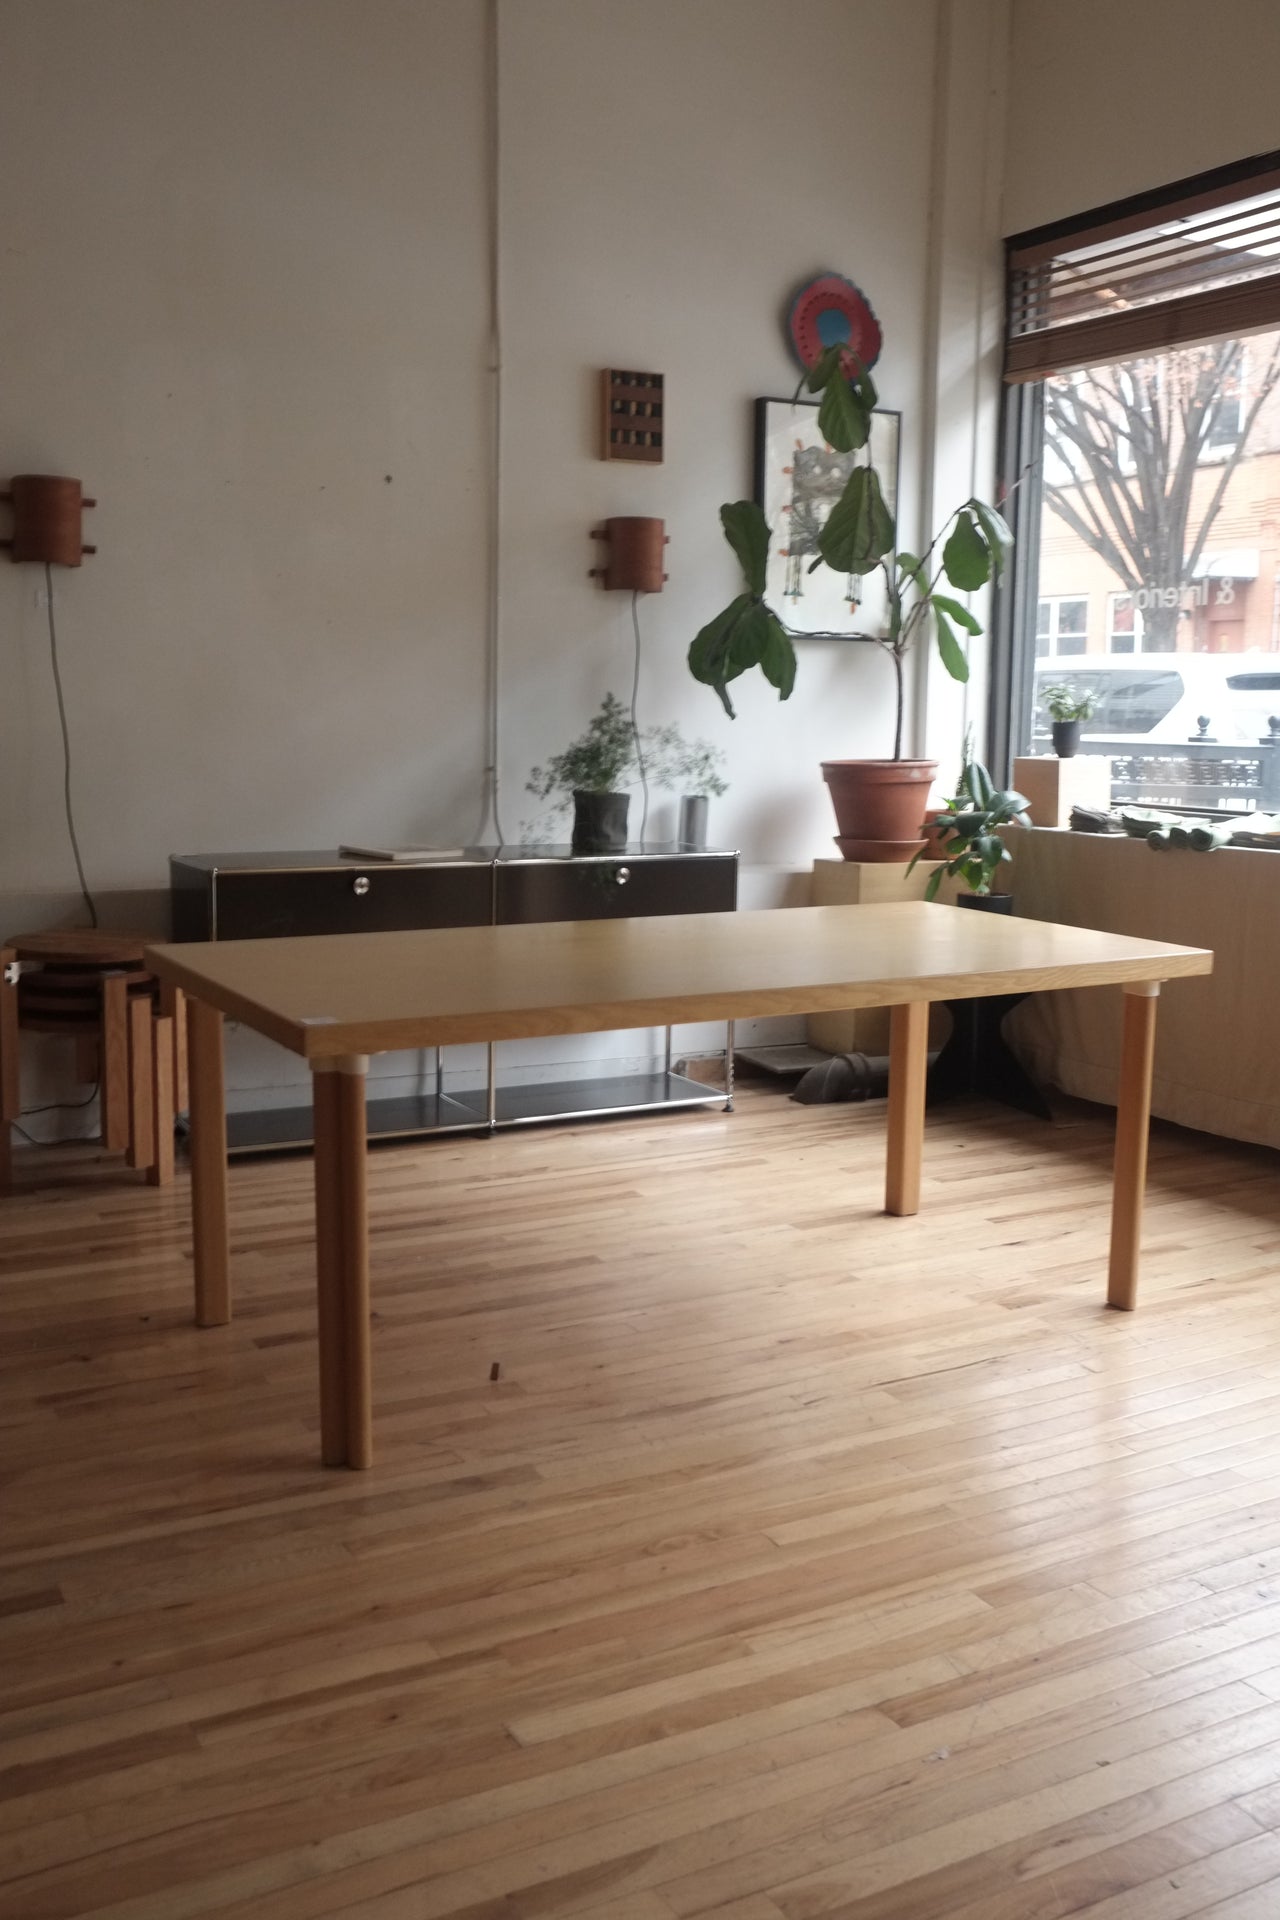 H83 dining table by Alvar Aalto for Artek